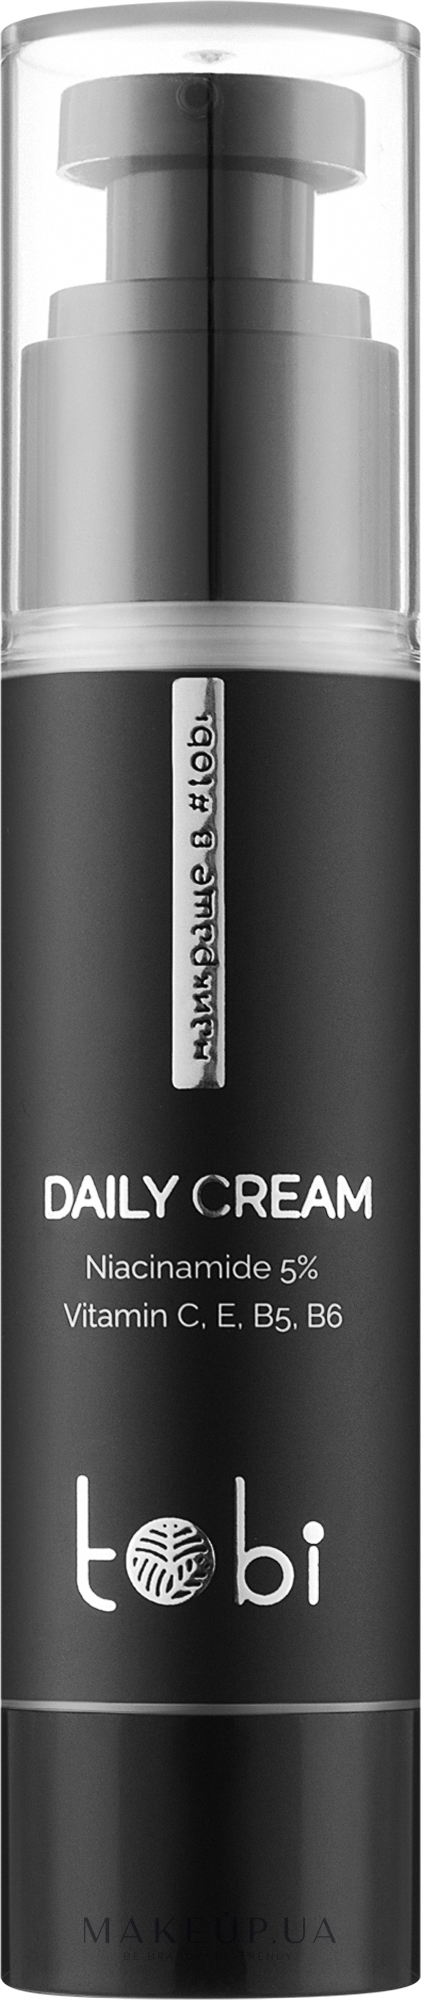 Крем-флюїд для обличчя з ніацинамідом 5% та вітамінами - Tobi Daily Cream — фото 50ml